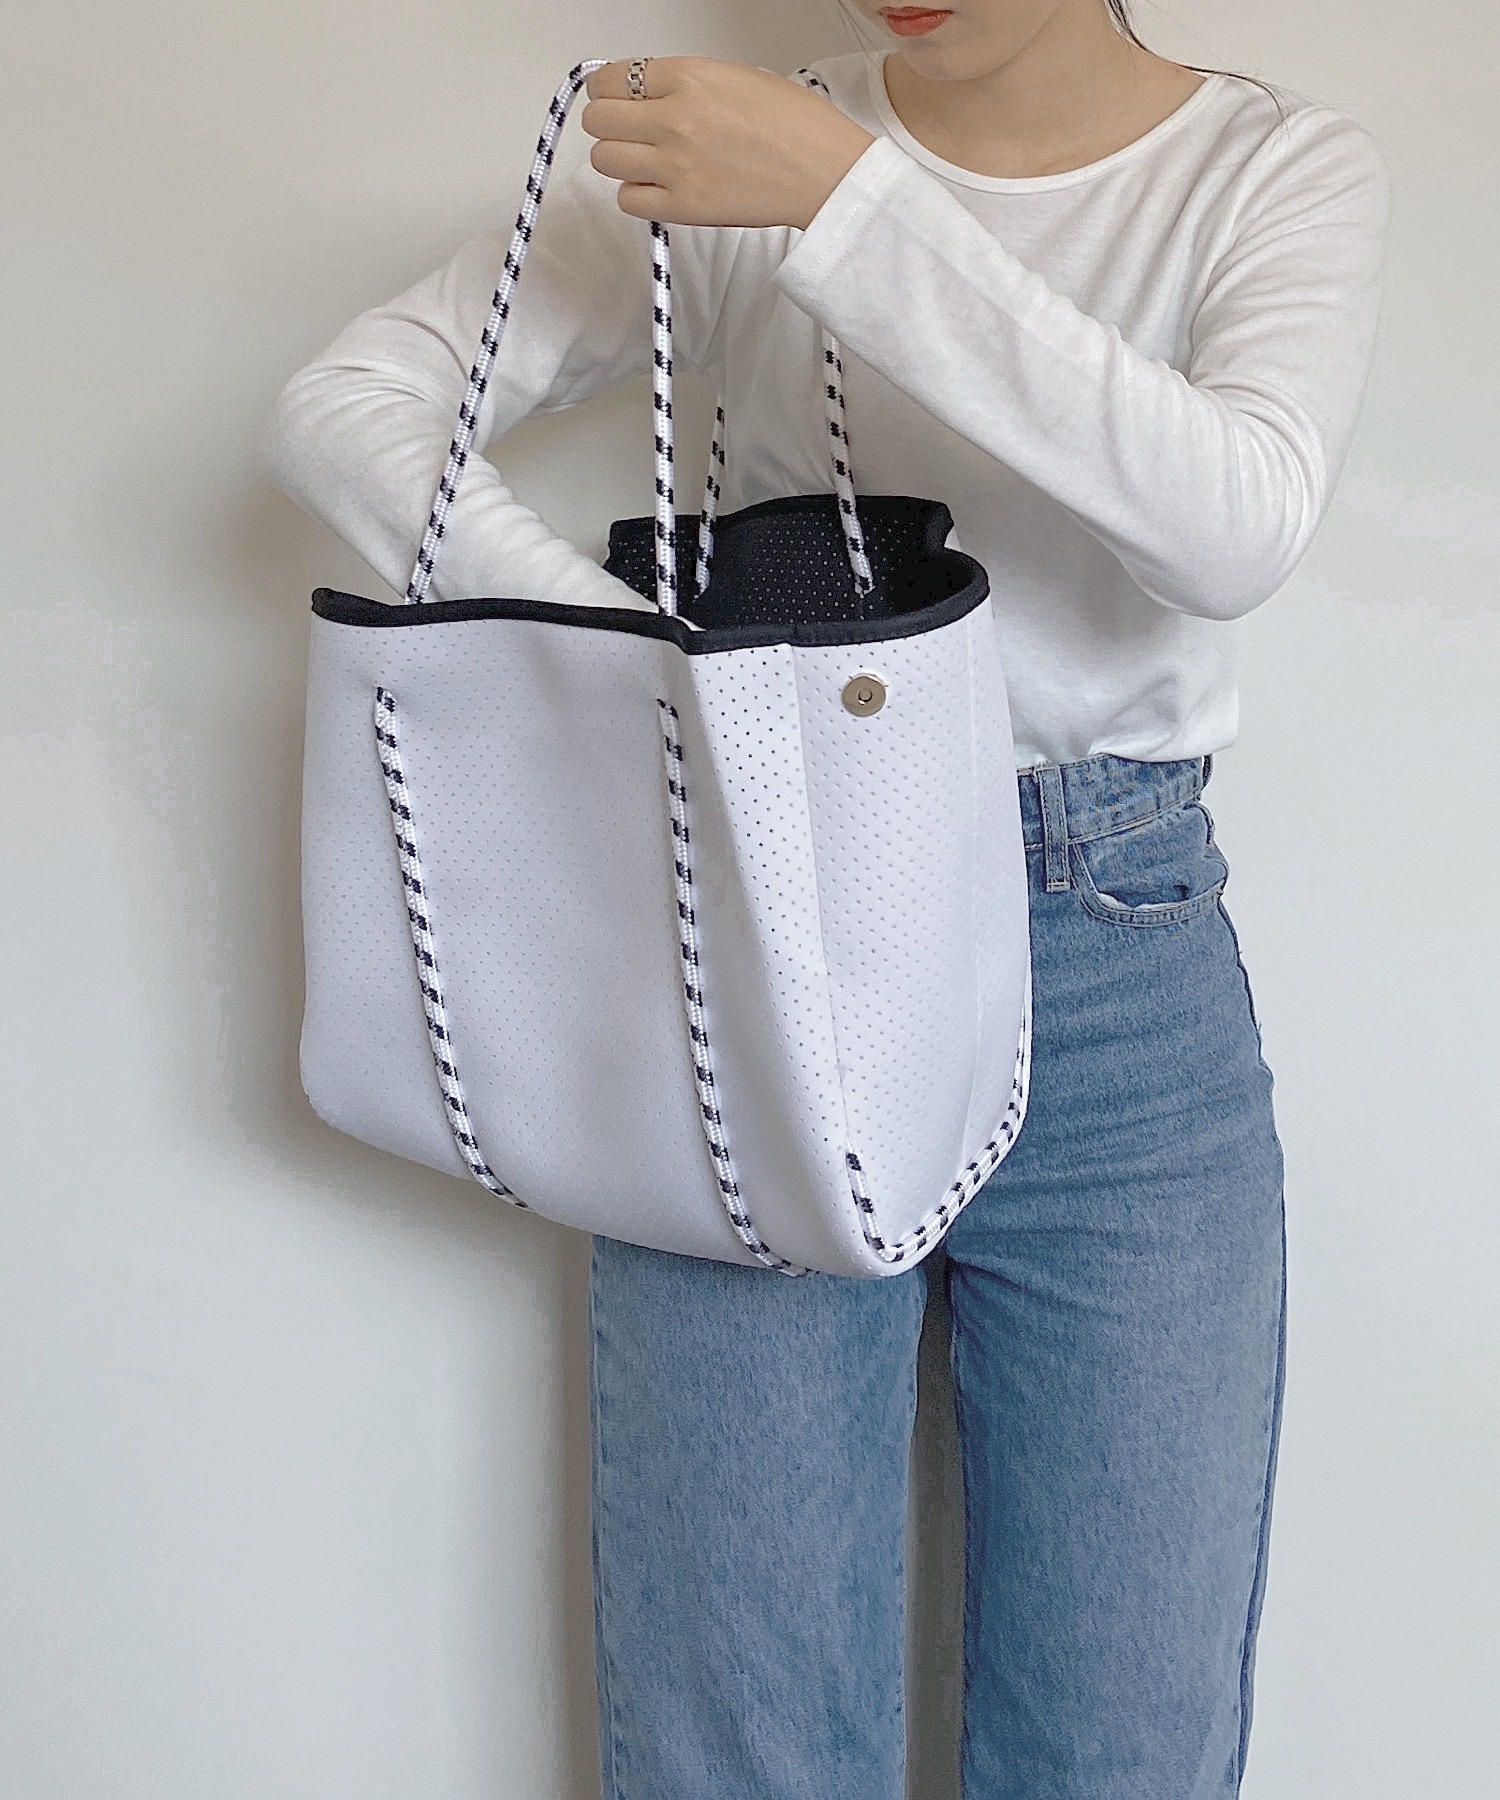 ネオプレントート 【即納】鞄 バッグ ネオプレン ネオプレーン トートバッグ バッグ トート マザーズバッグ レディース 韓国ファッション